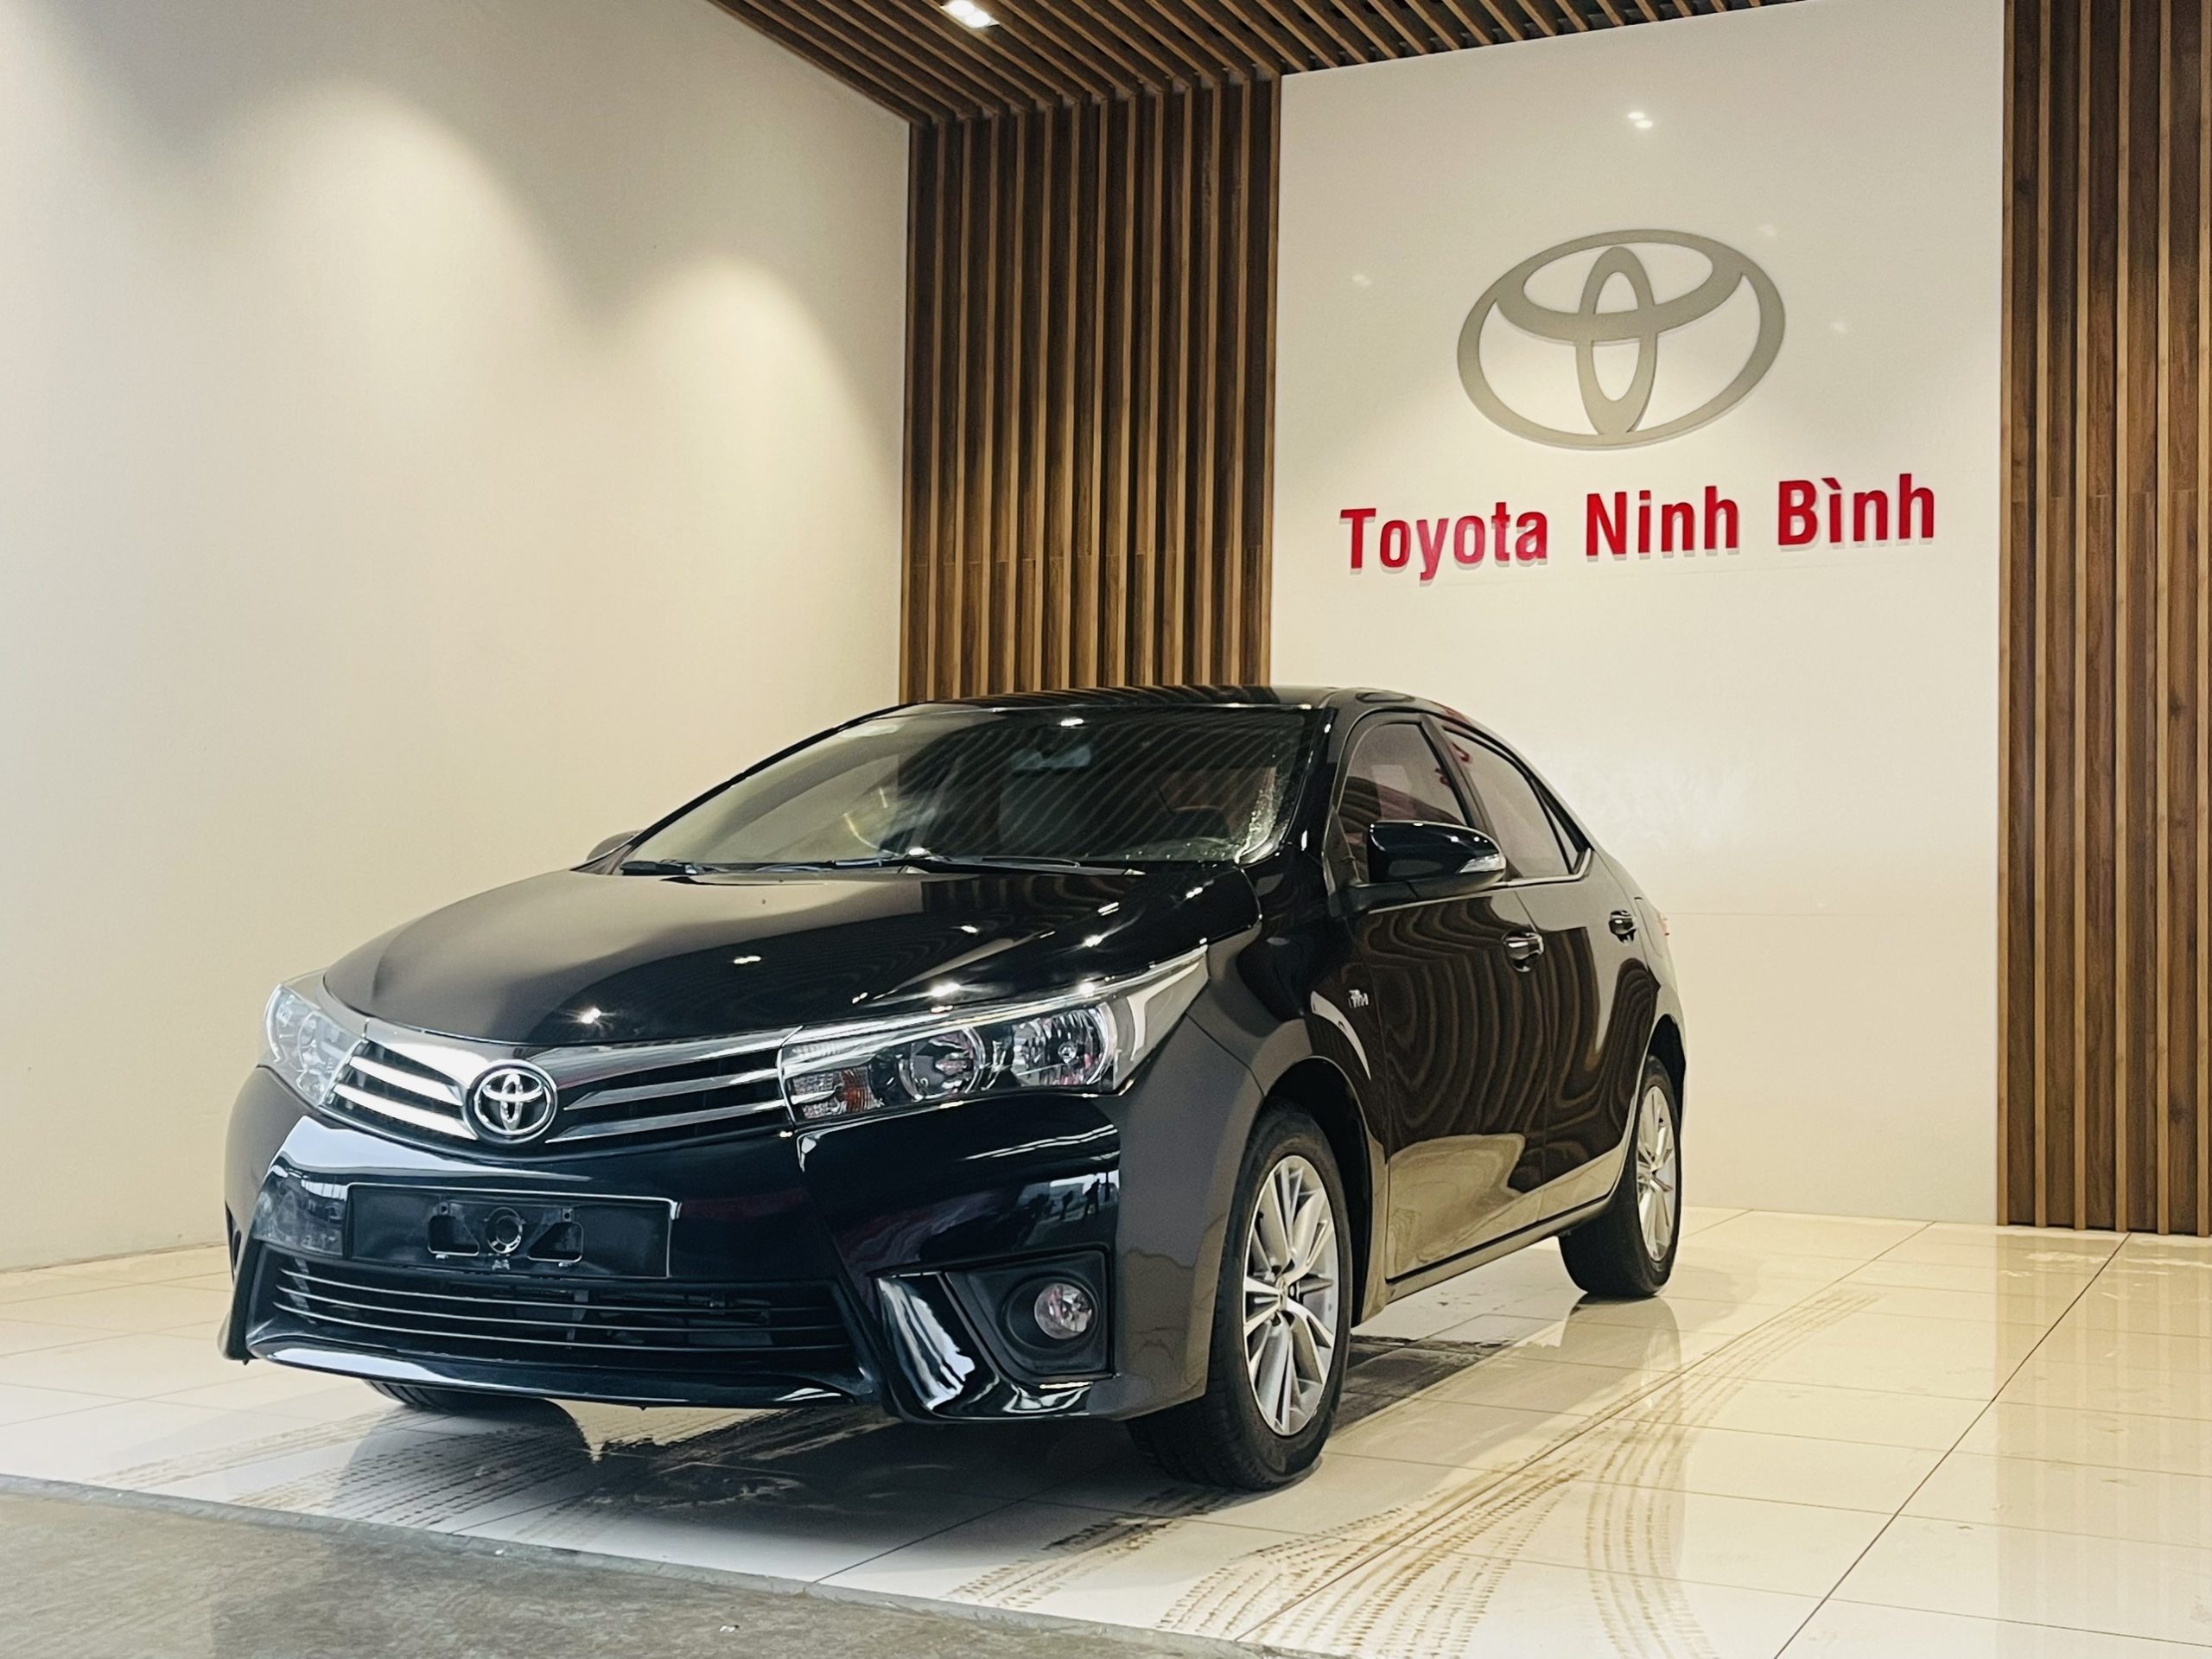 Bán xe Toyota Altis 2015 màu Nâu ánh Đồng  Toyota An Thành Fukushima   MBN26012  0908450548